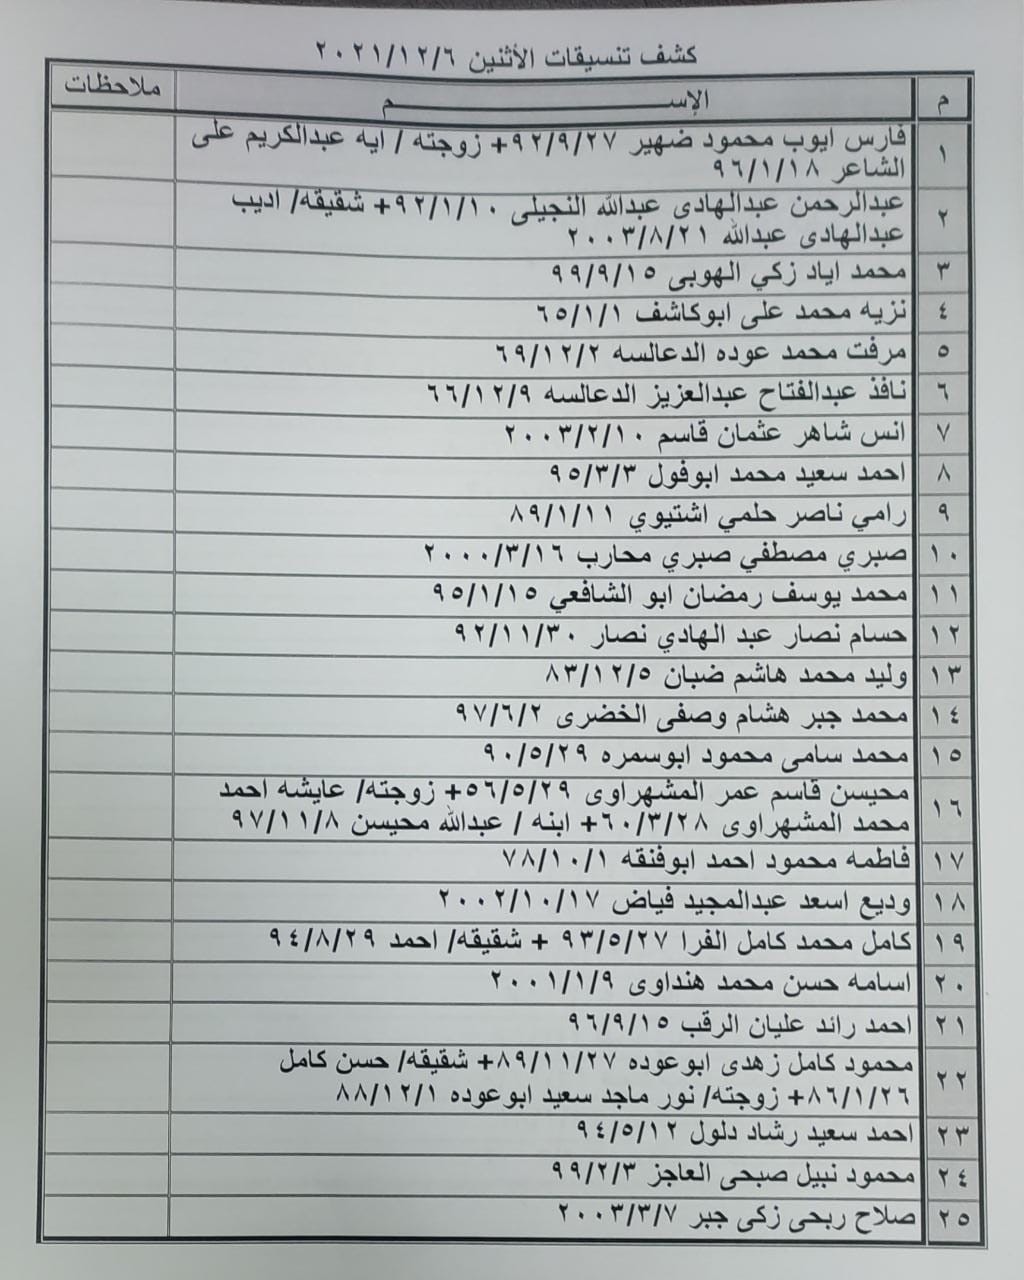 بالأسماء: كشف "تنسيقات مصرية" للسفر عبر معبر رفح يوم الإثنين 6 ديسمبر